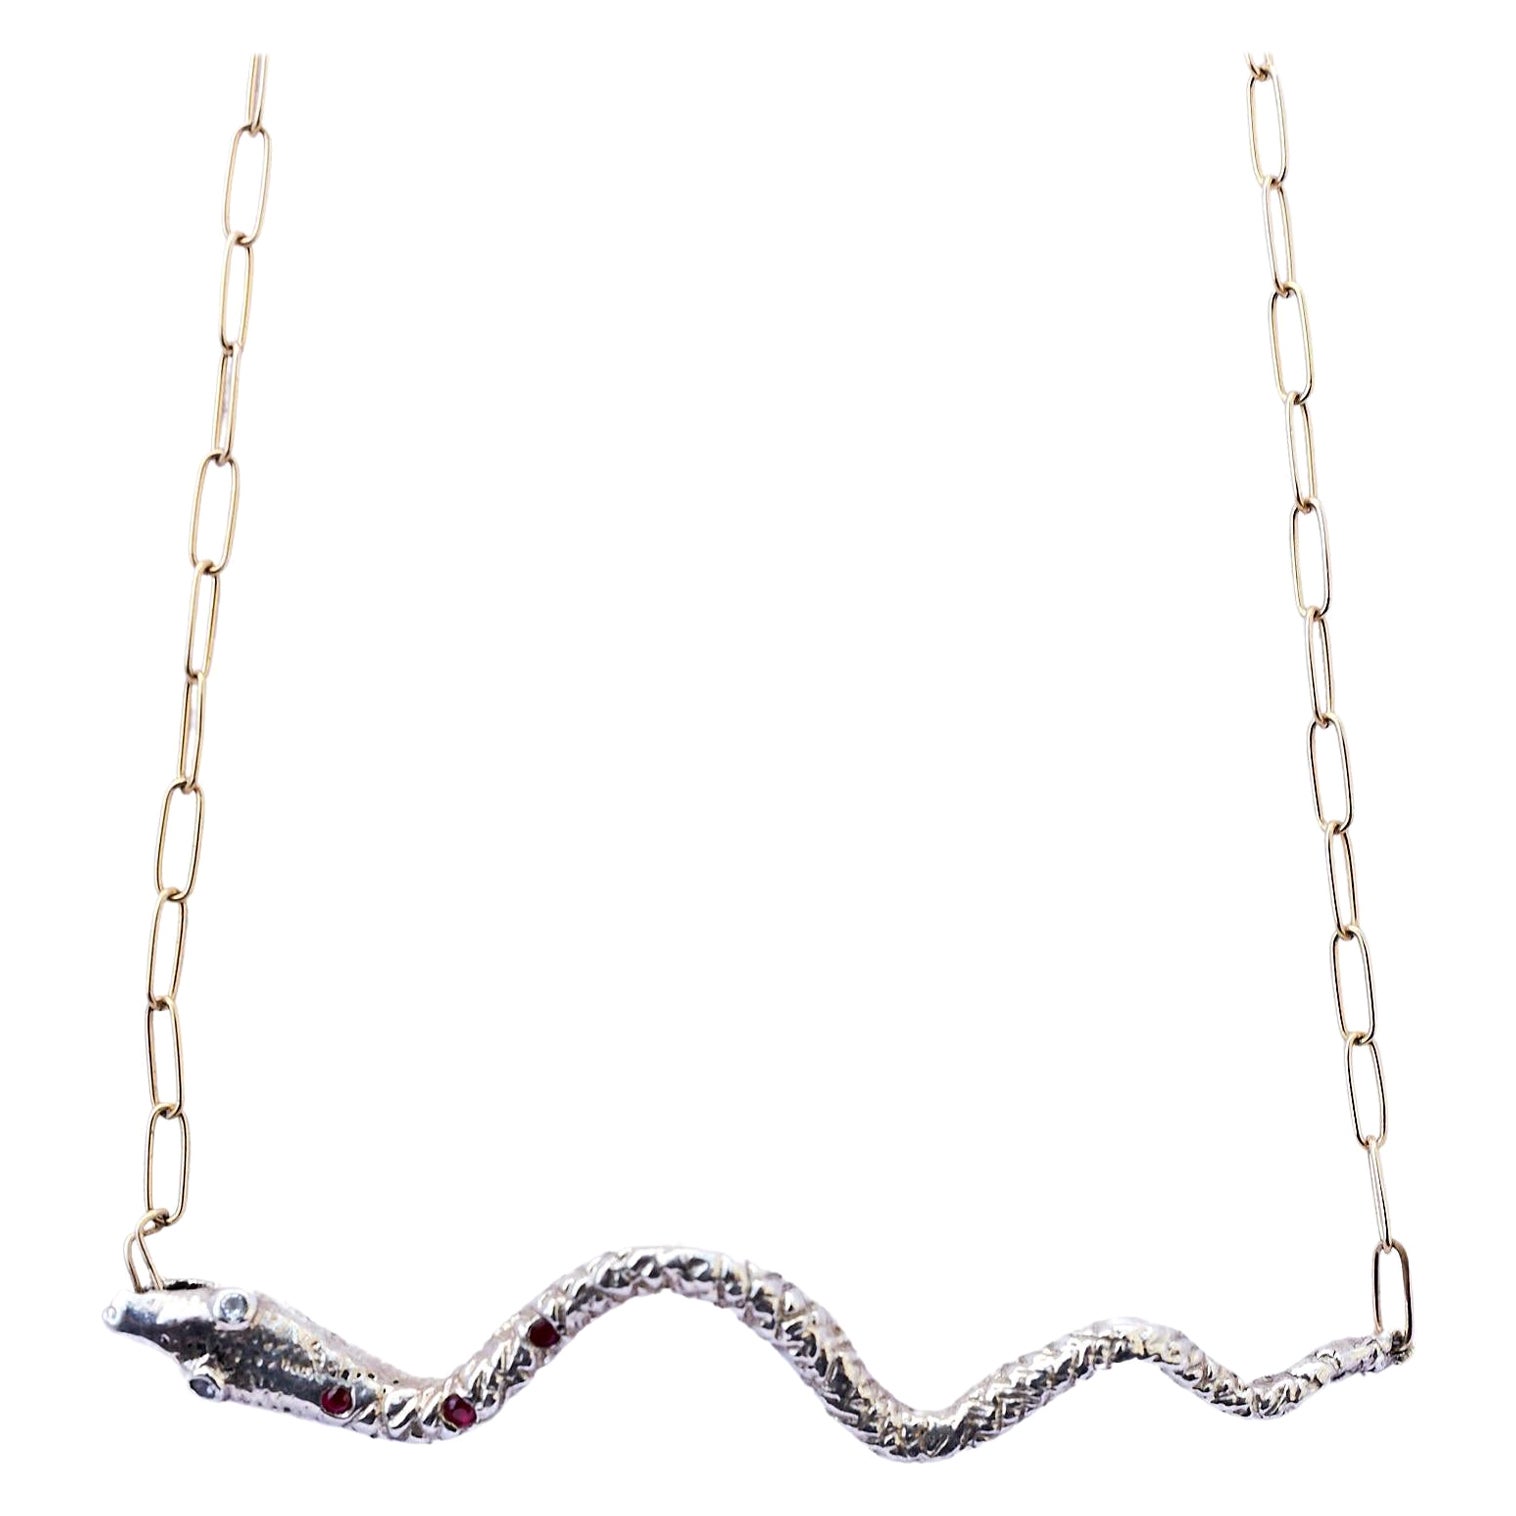 Collier de serpent en argent, rubis et iolite, chaîne remplie d'or J Dauphin